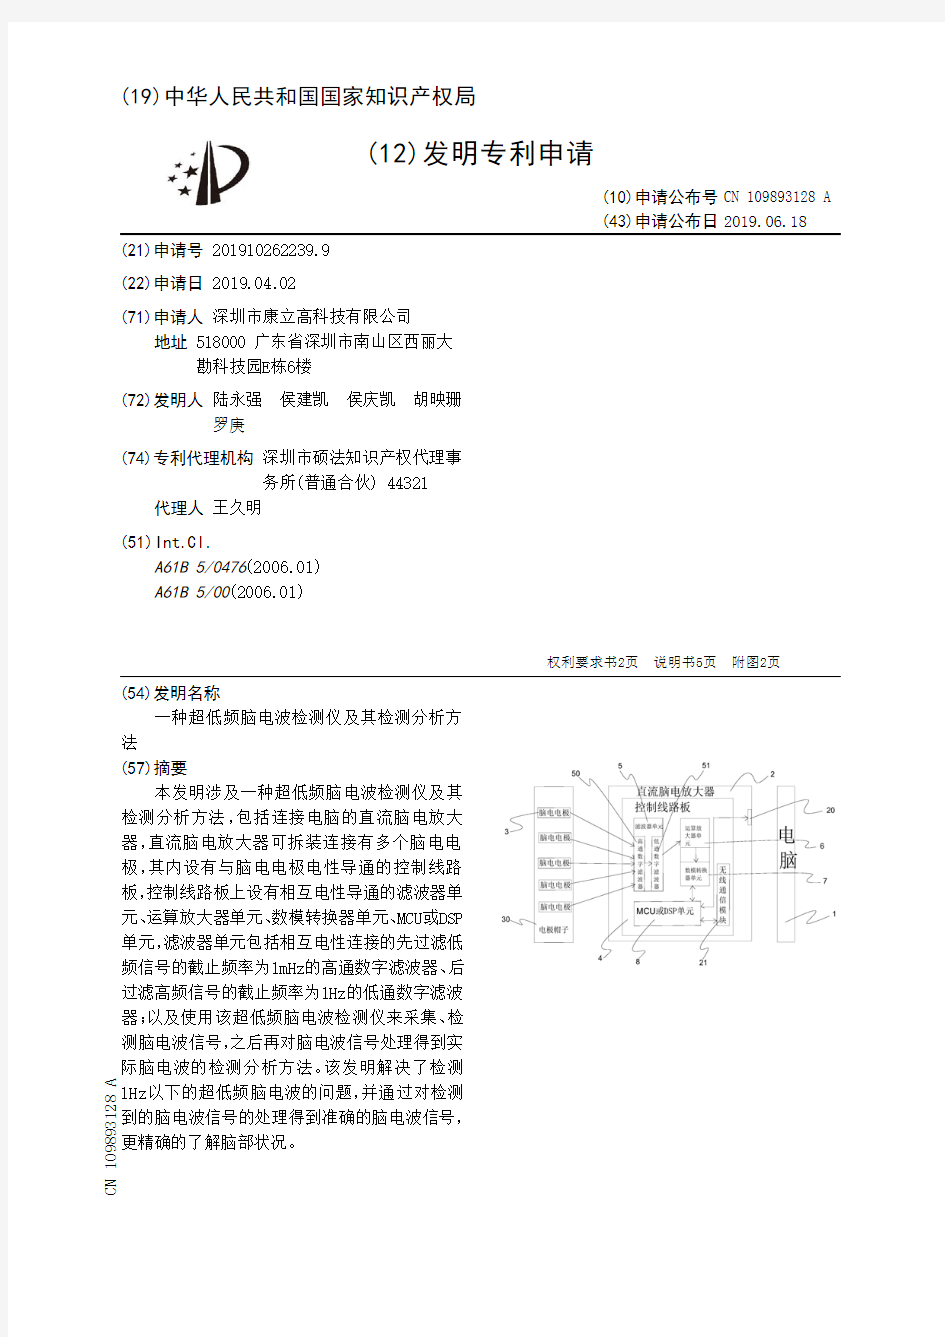 【CN109893128A】一种超低频脑电波检测仪及其检测分析方法【专利】